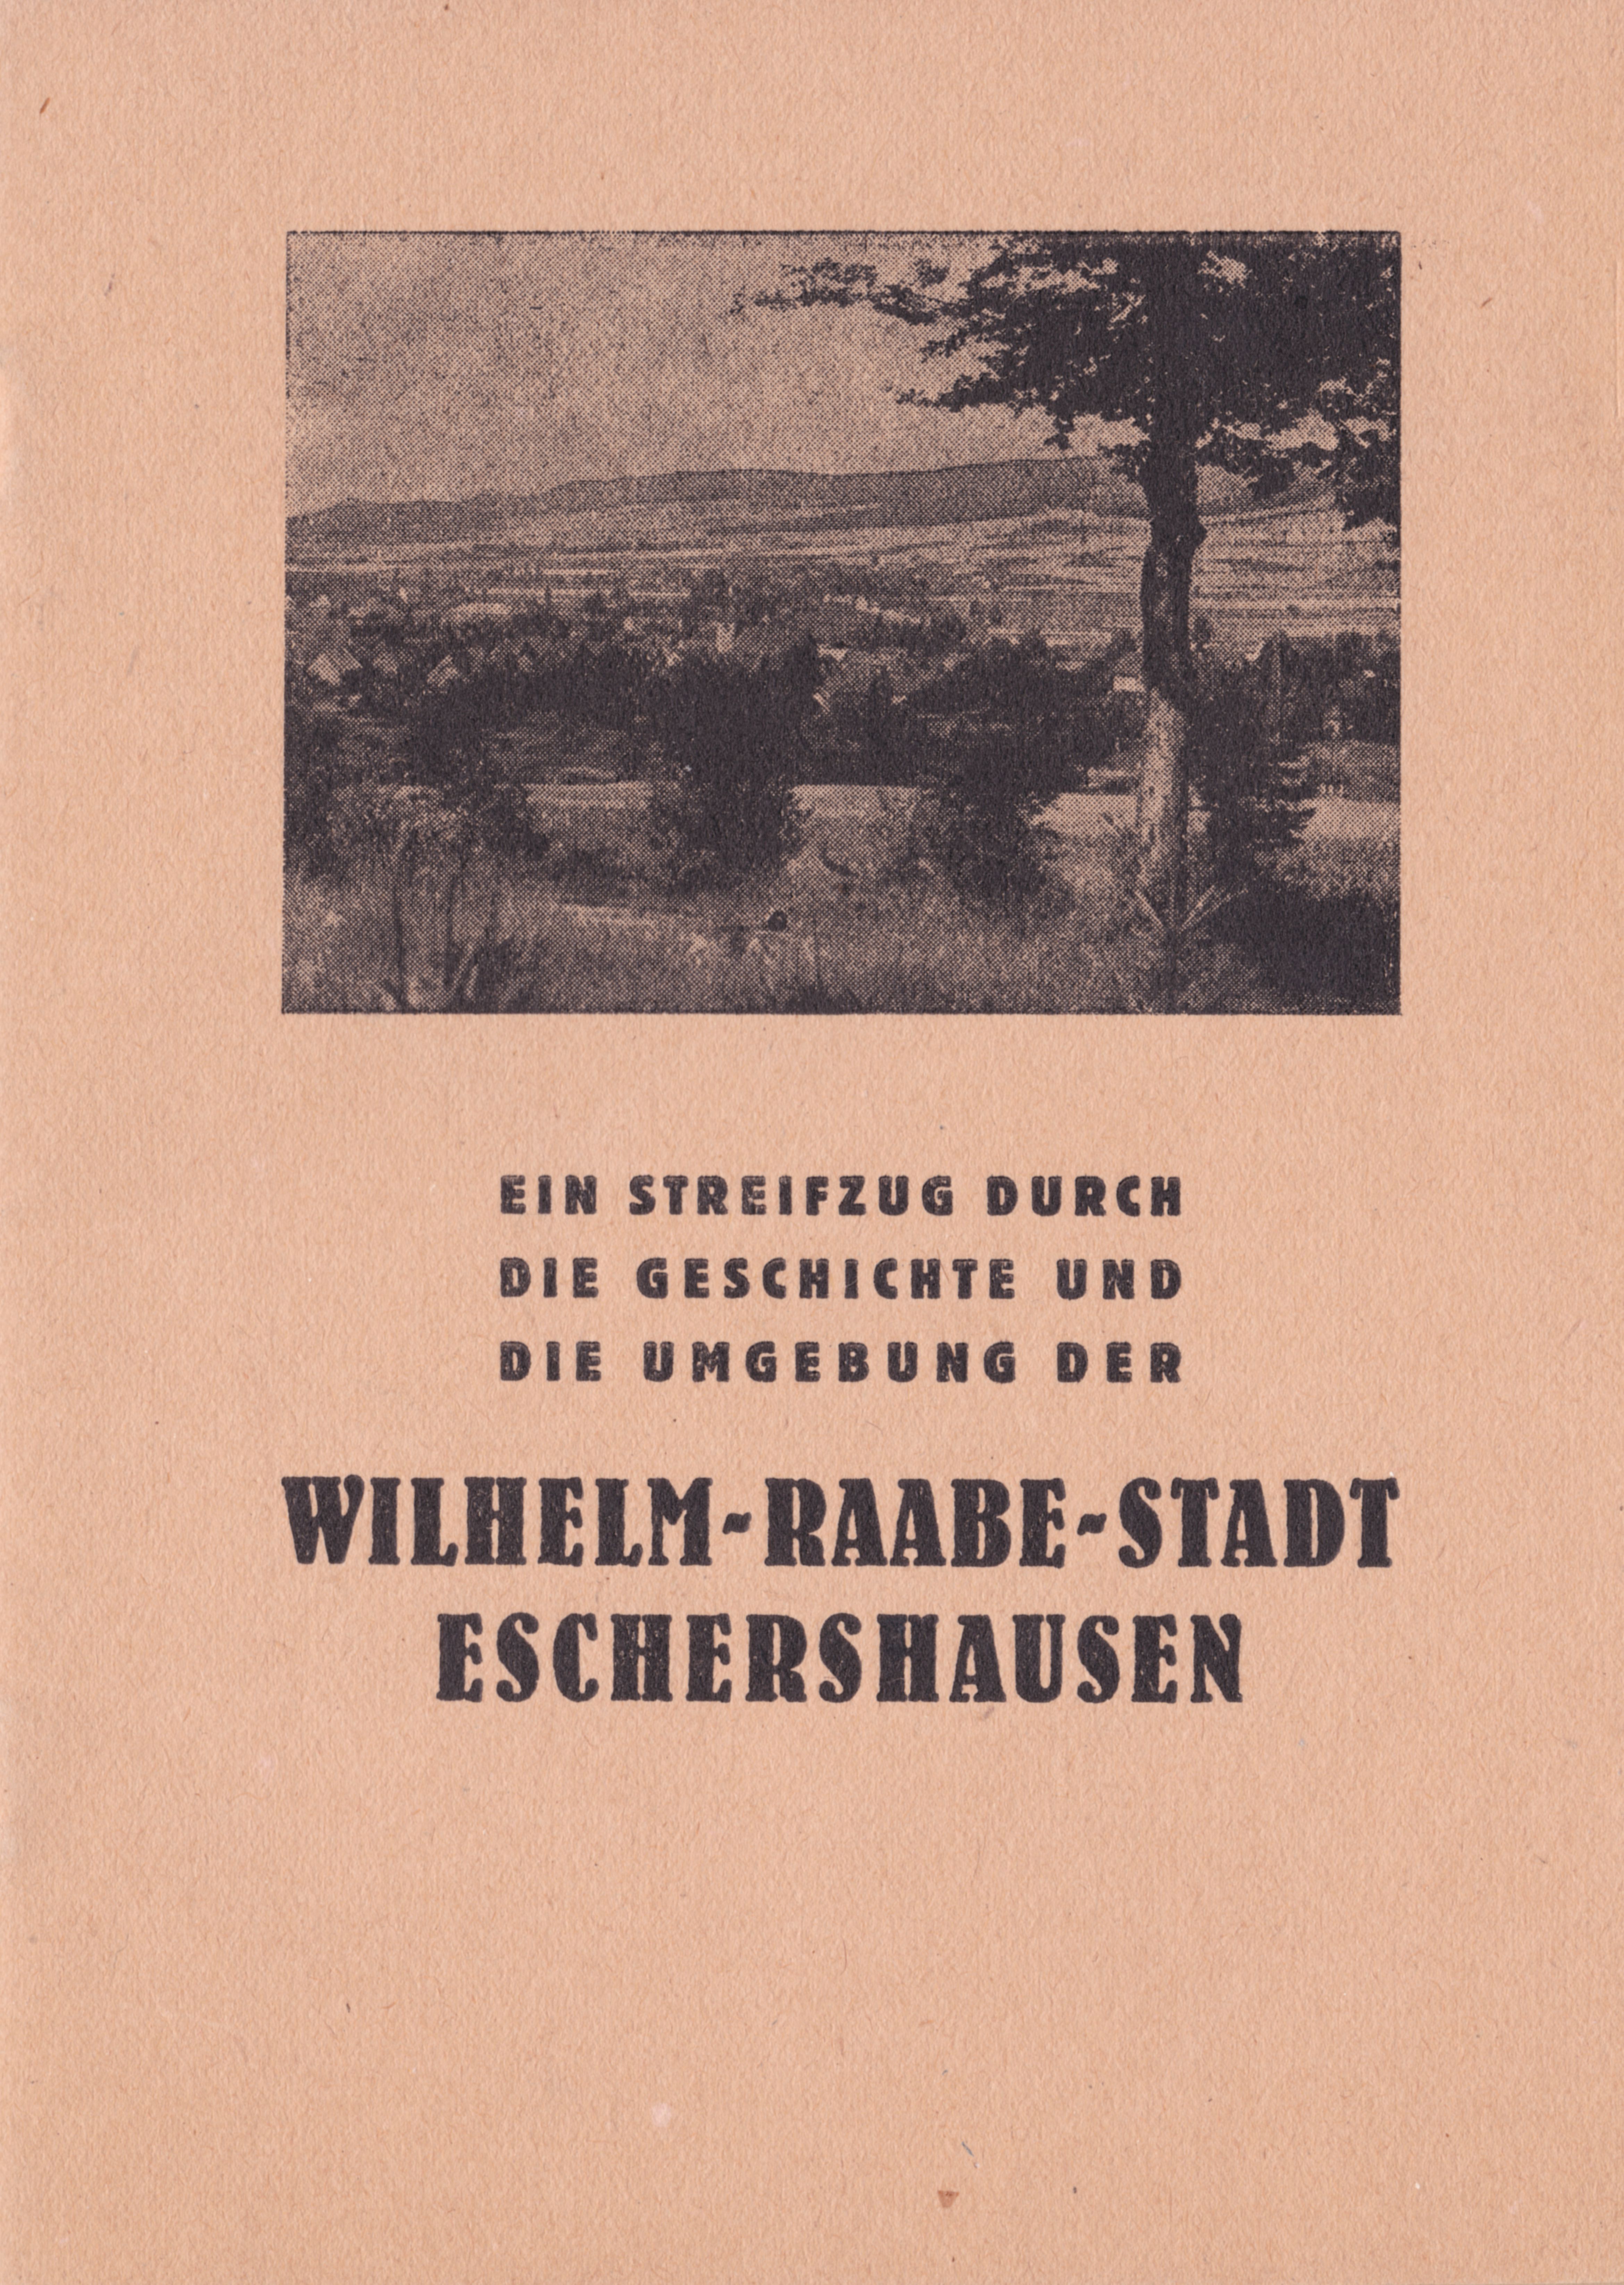 Frontseite des Buchs Raabestadt Eschershausen 1954